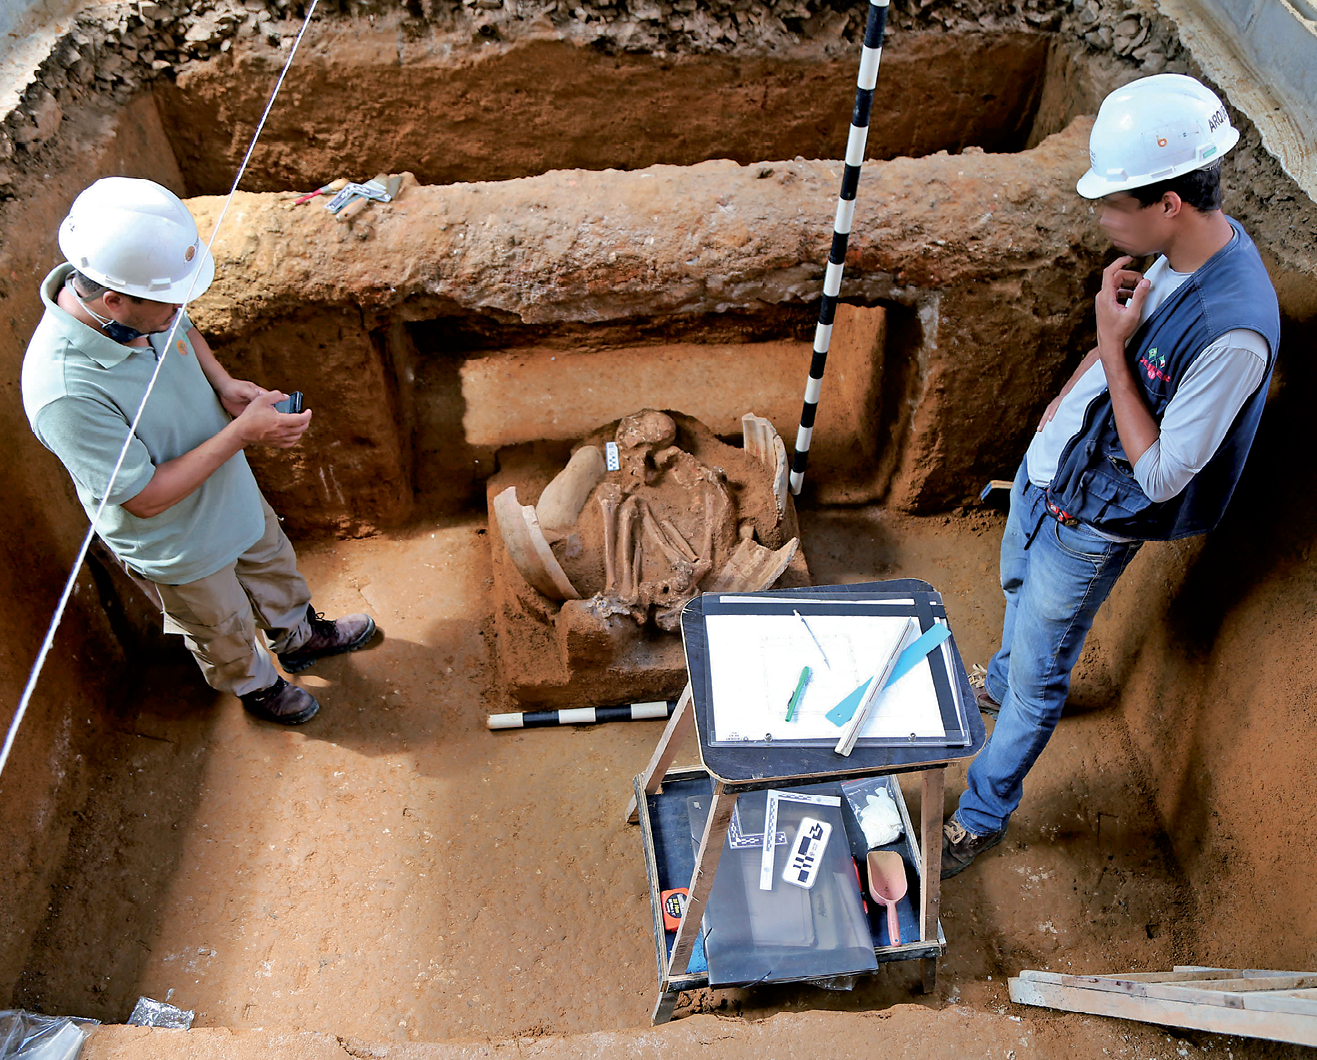 Fotografia. Destaque para dois homens em pé, sobre uma área escavada, com destaque para uma urna contendo uma ossada humana.